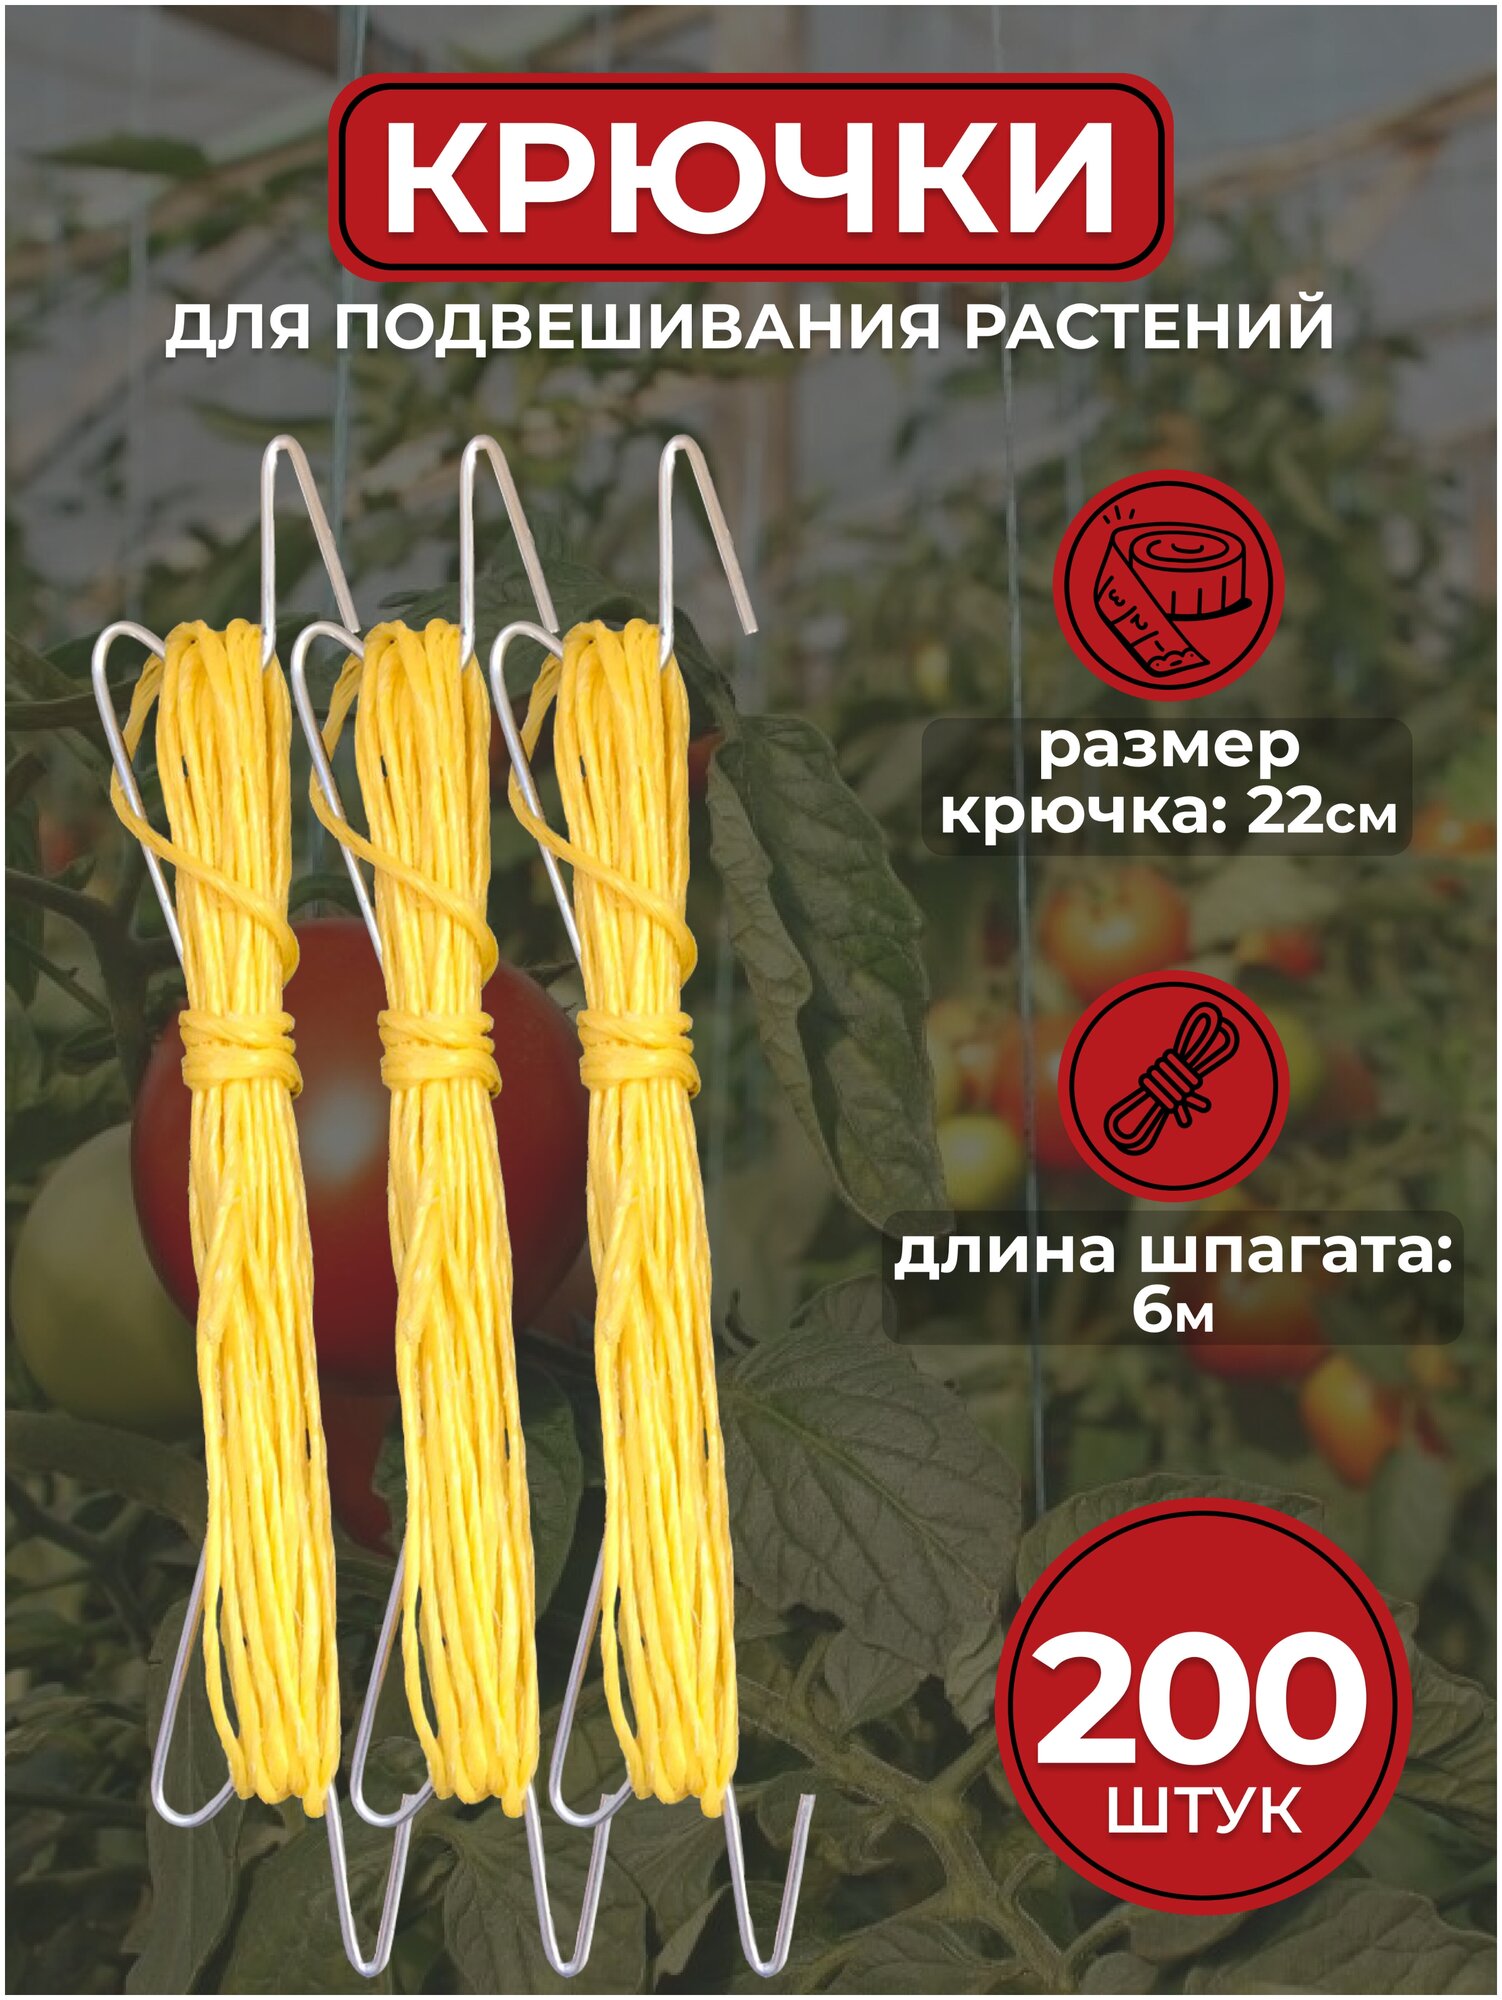 Крючки для подвешивания растений в теплице/парнике с намоткой шпагата (200 штук)